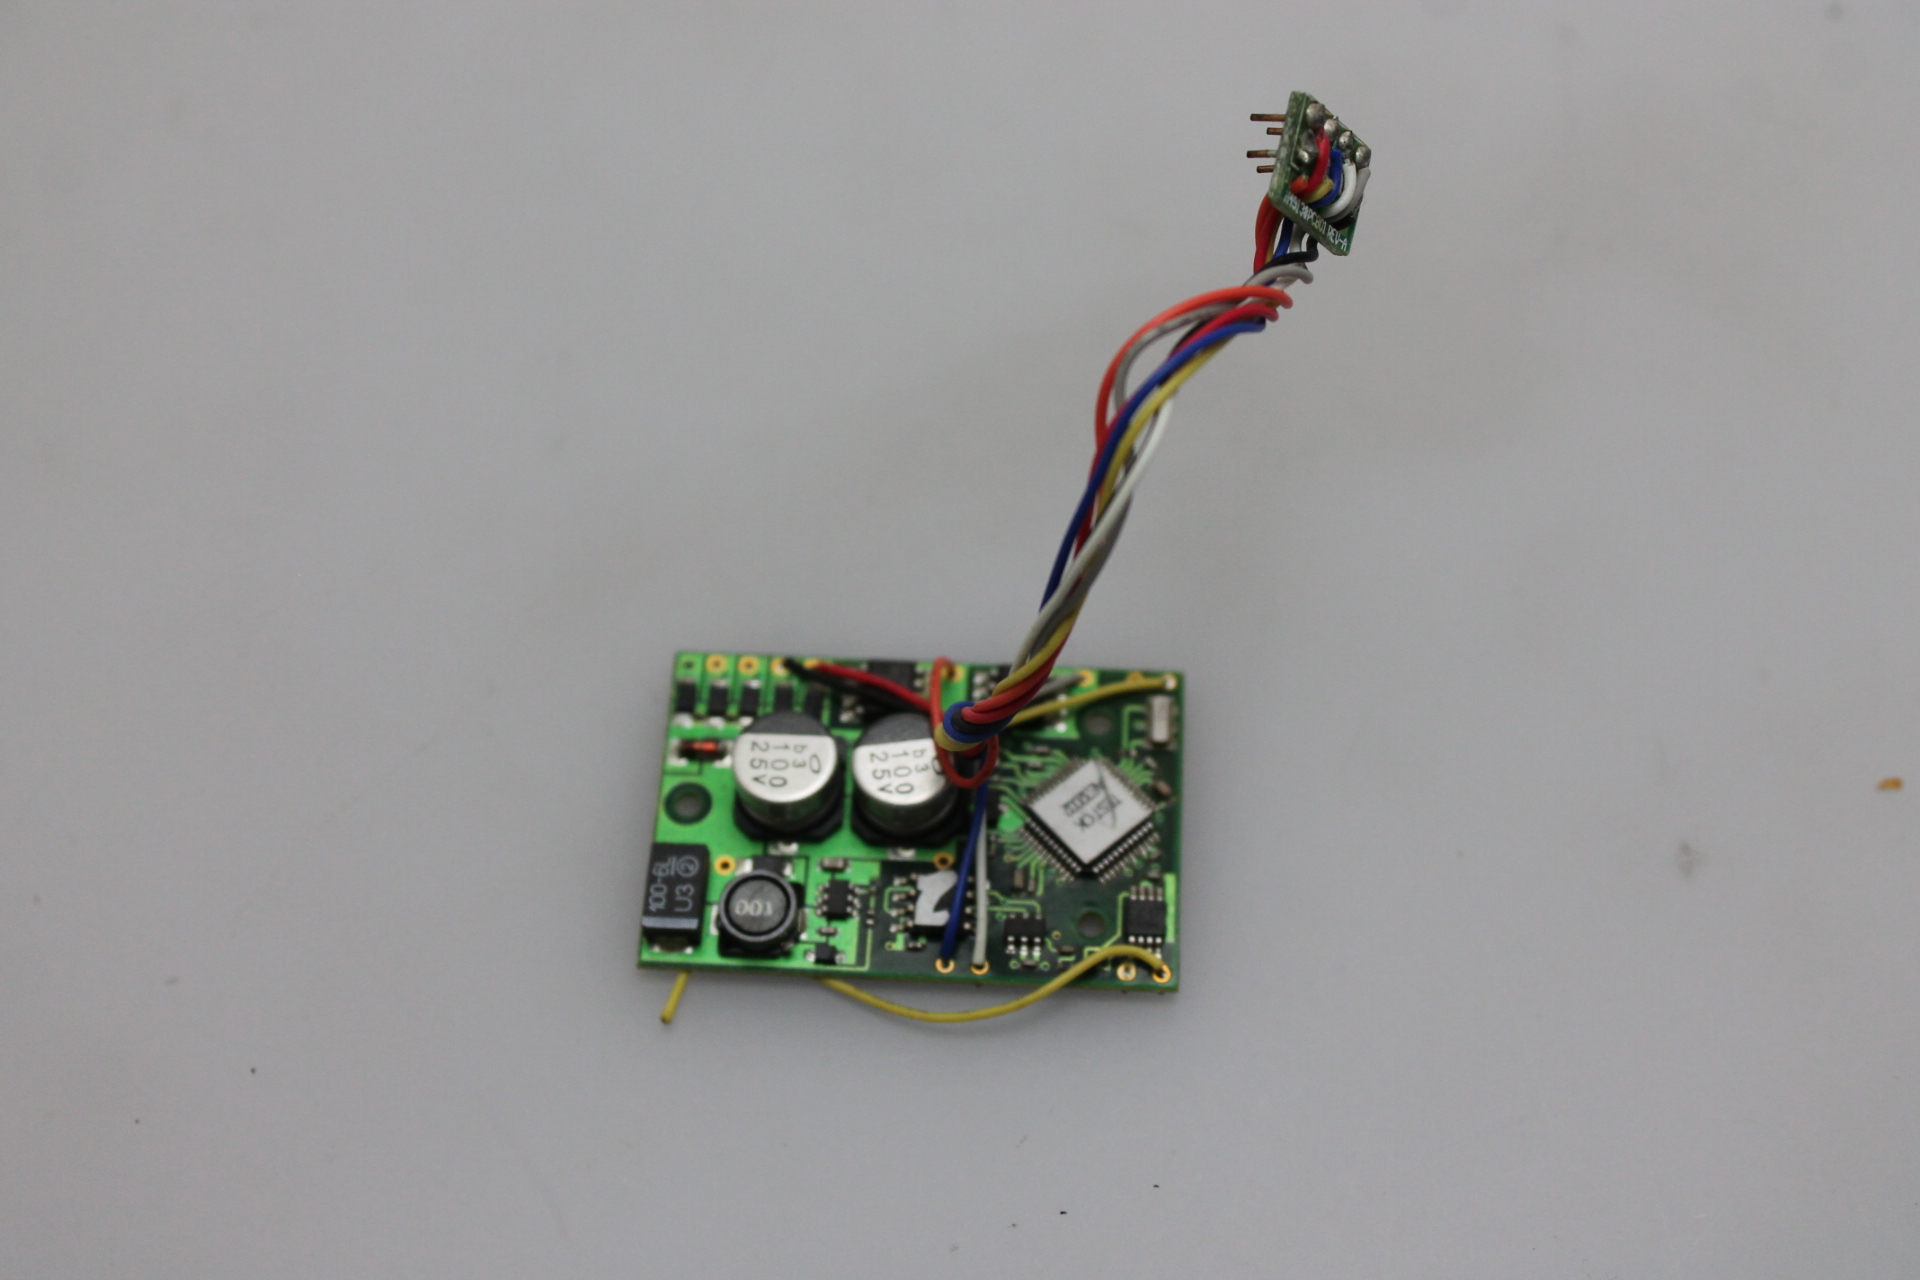 DCC Sound Board -AE32002 w/ 8 Pin Plug (DCC Sound) - Click Image to Close